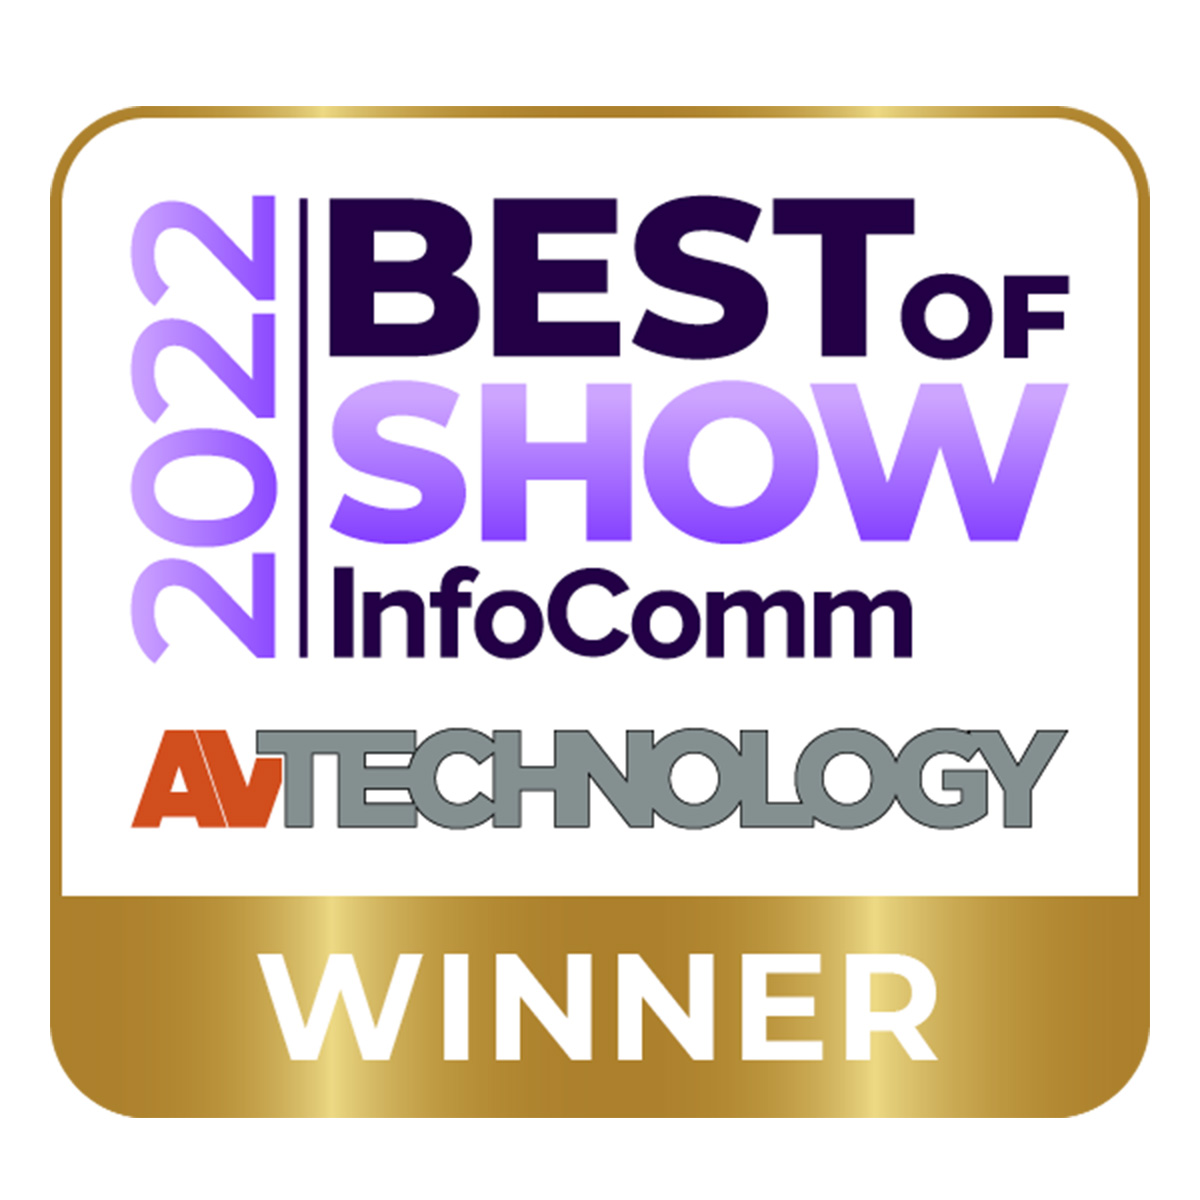 AV Technology “Best of Show” at InfoComm